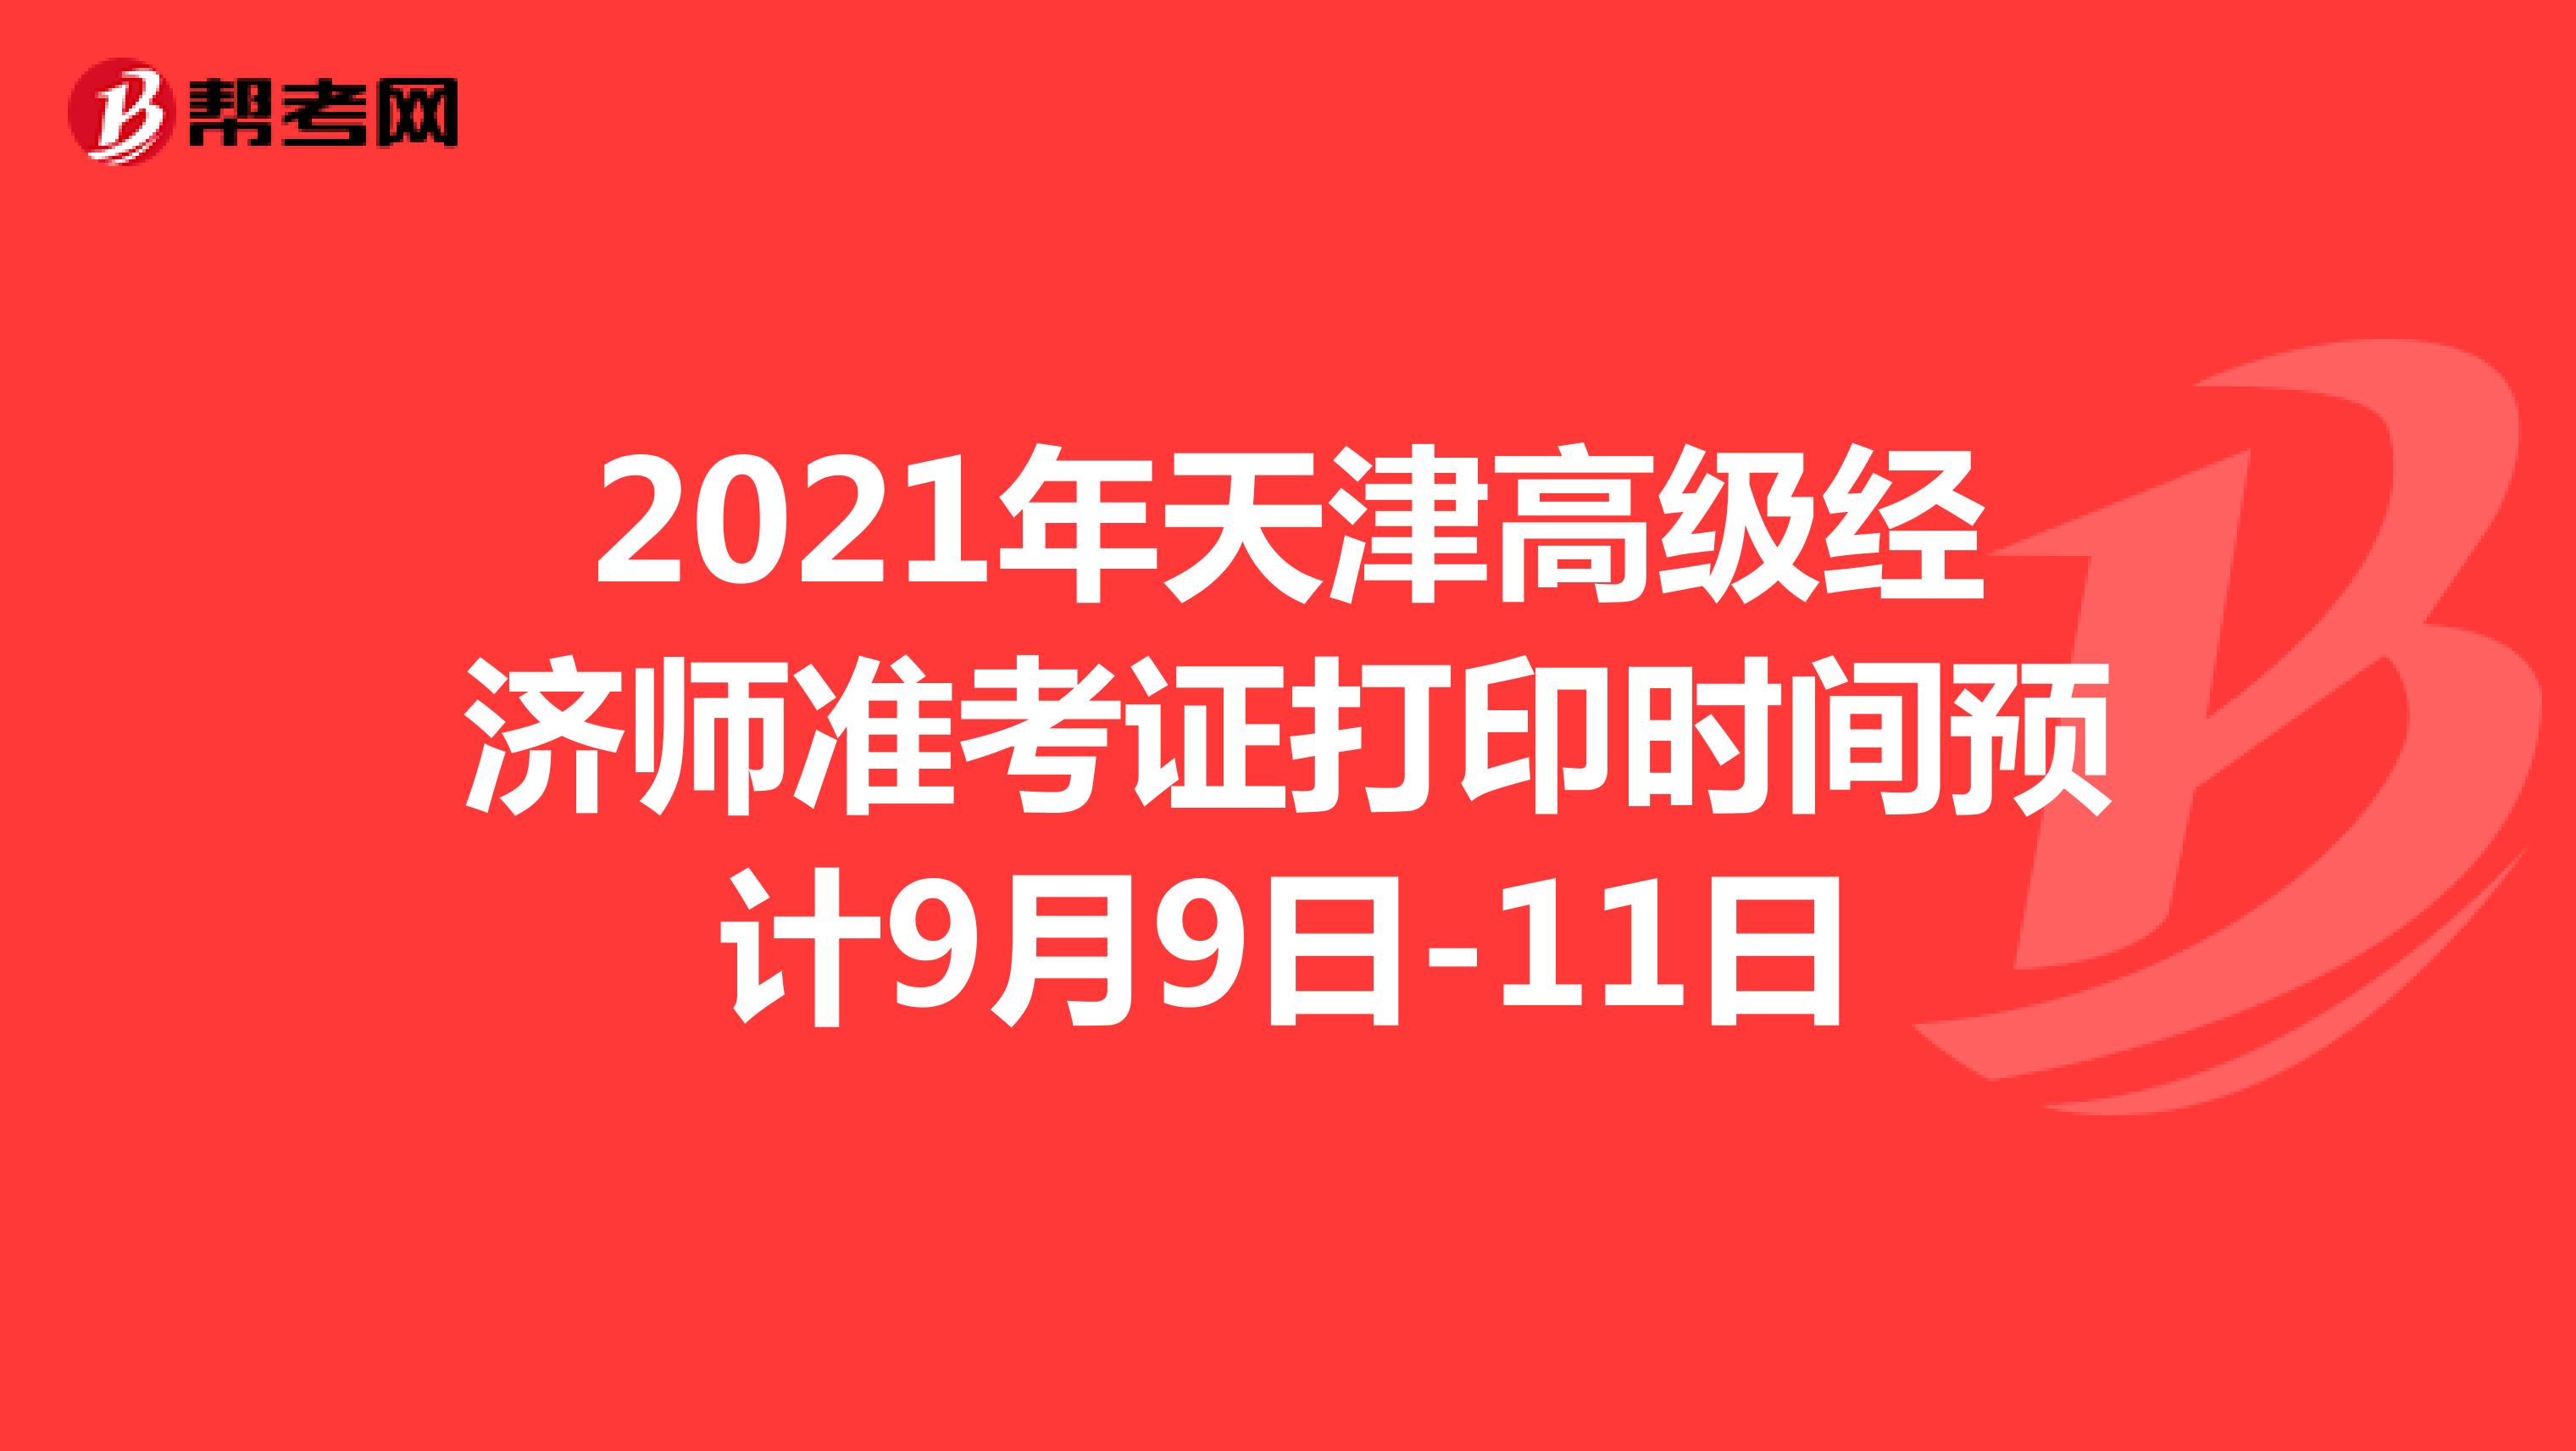 2021年天津高级经济师准考证打印时间预计9月9日-11日